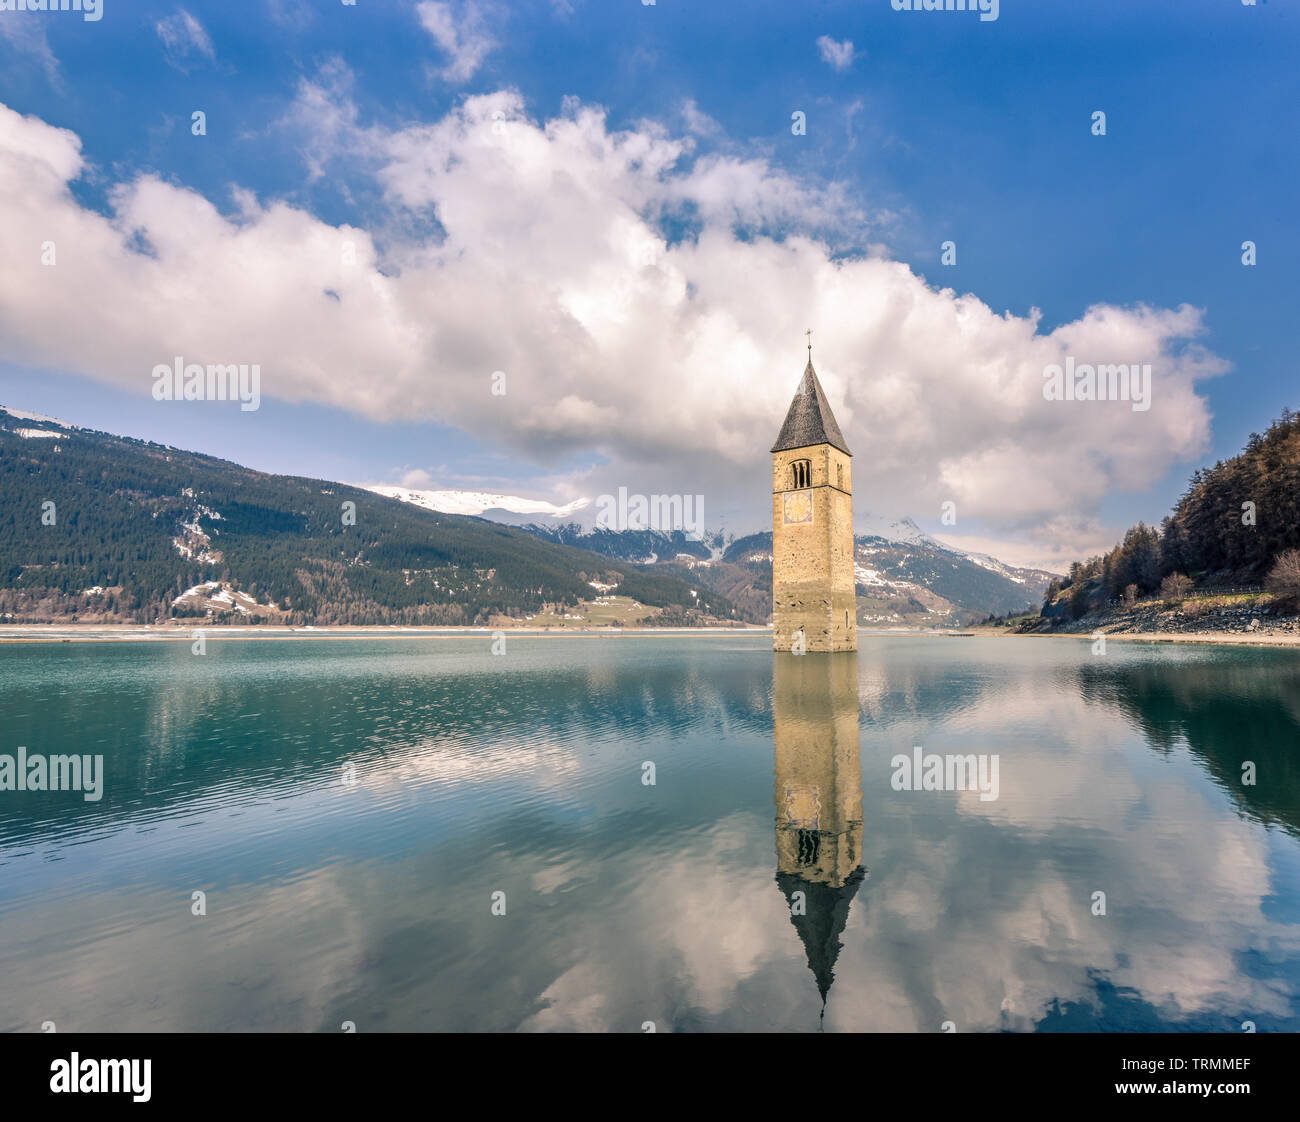 Lake Reschen with sunken Churchtower, Curon Vinosta, Italy Stock Photo